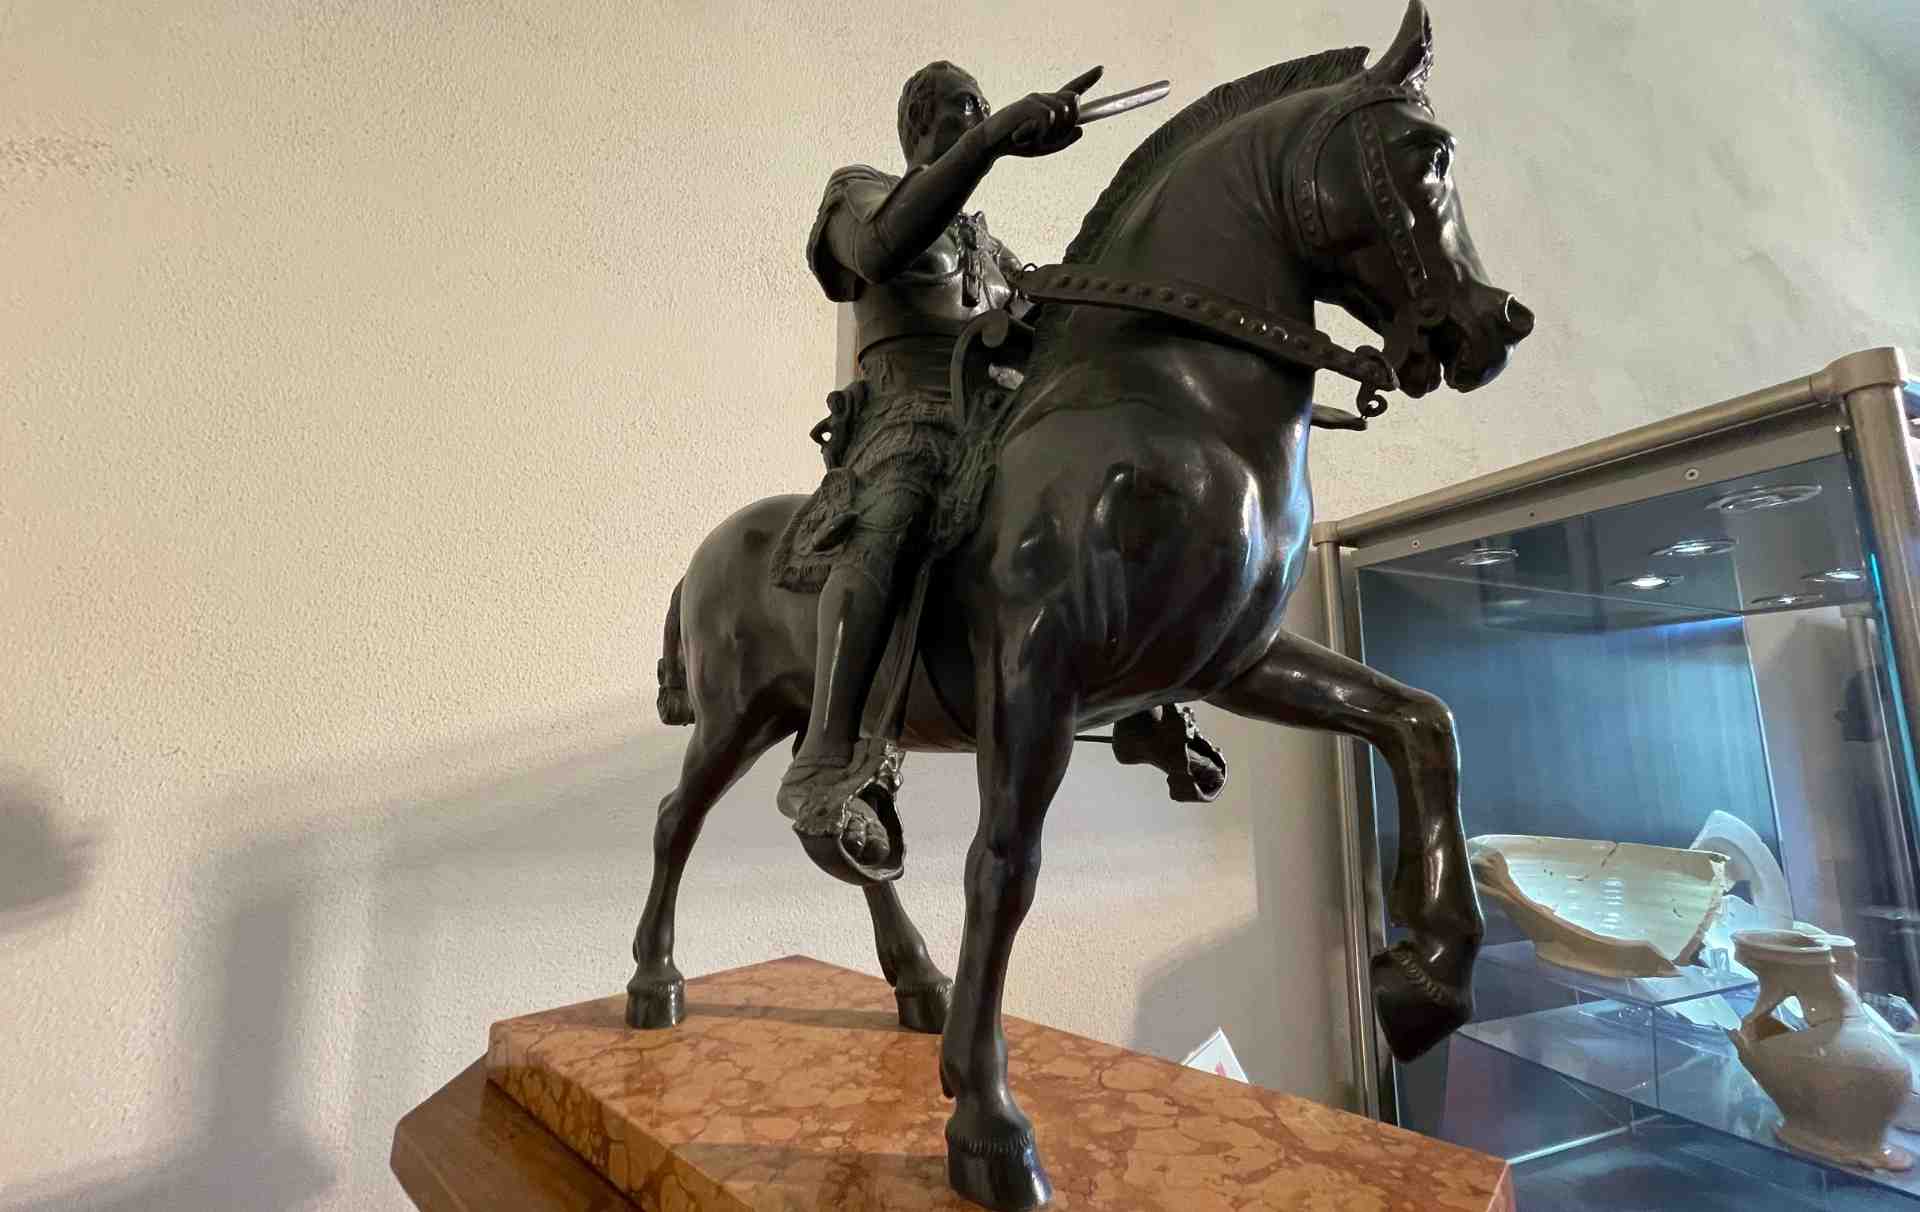 Copia della statua equestre dedicata a Erasmo da Narni a Palazzo Eroli a Narni